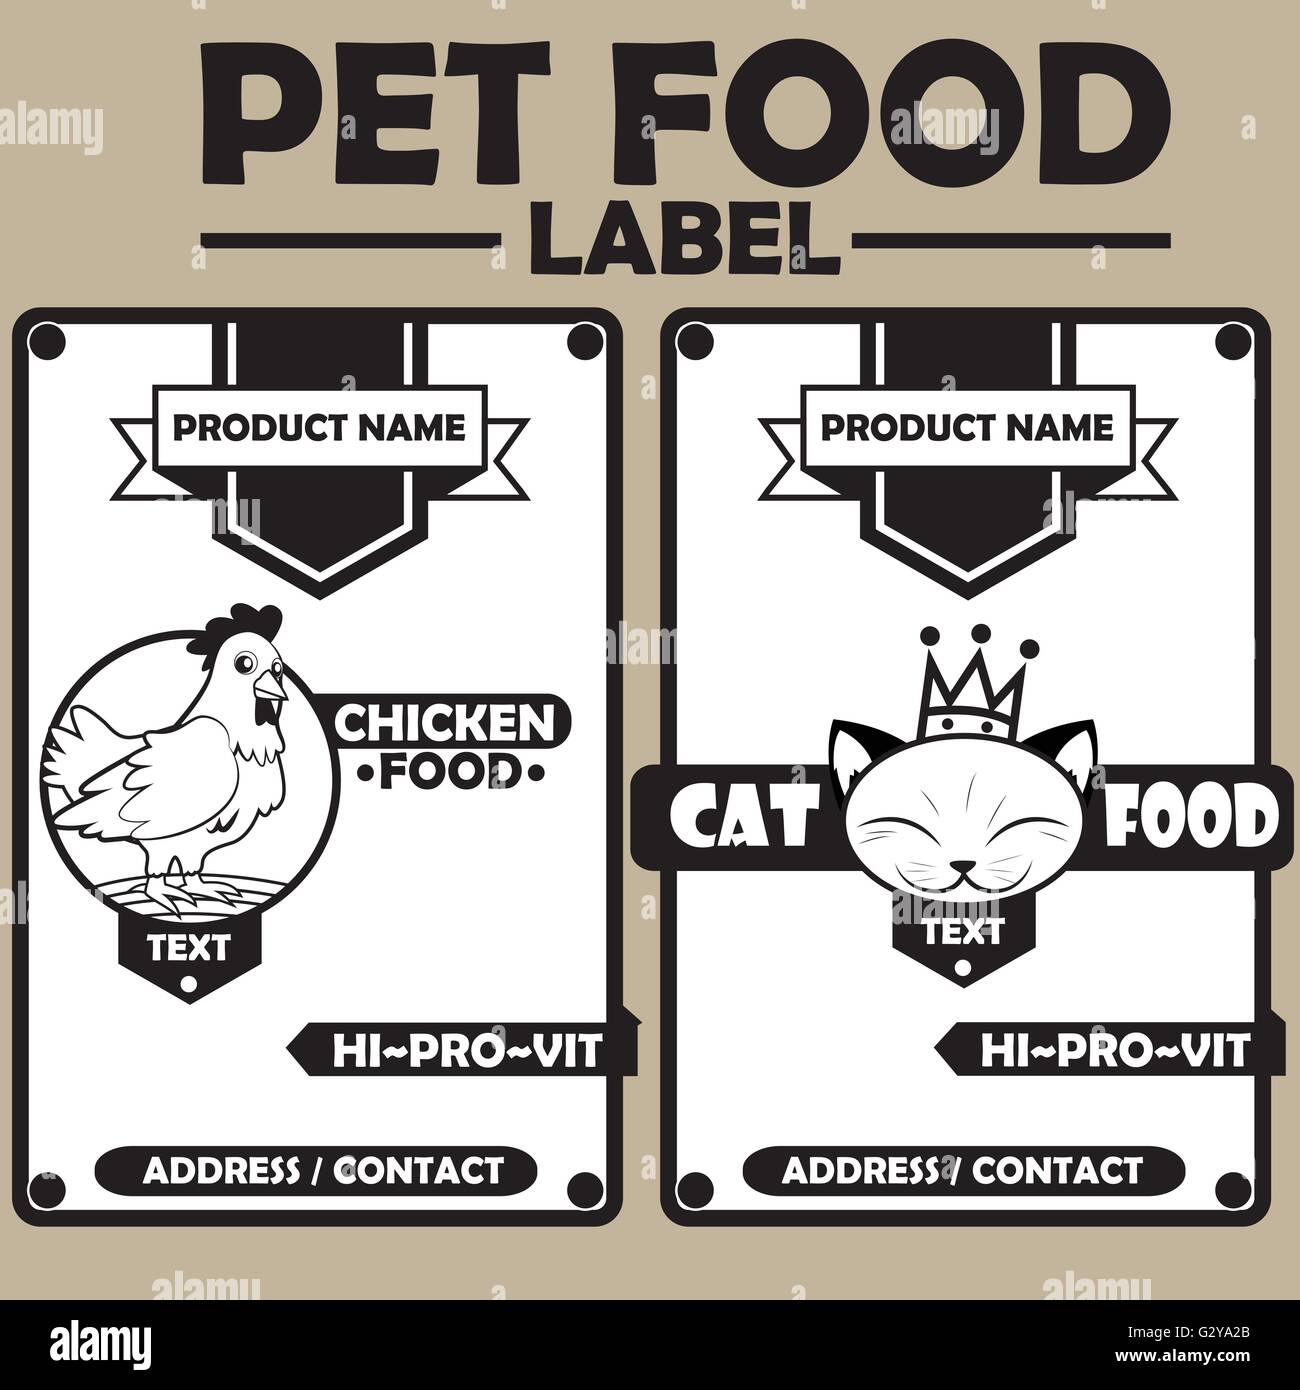 Pet food label Stock Vector